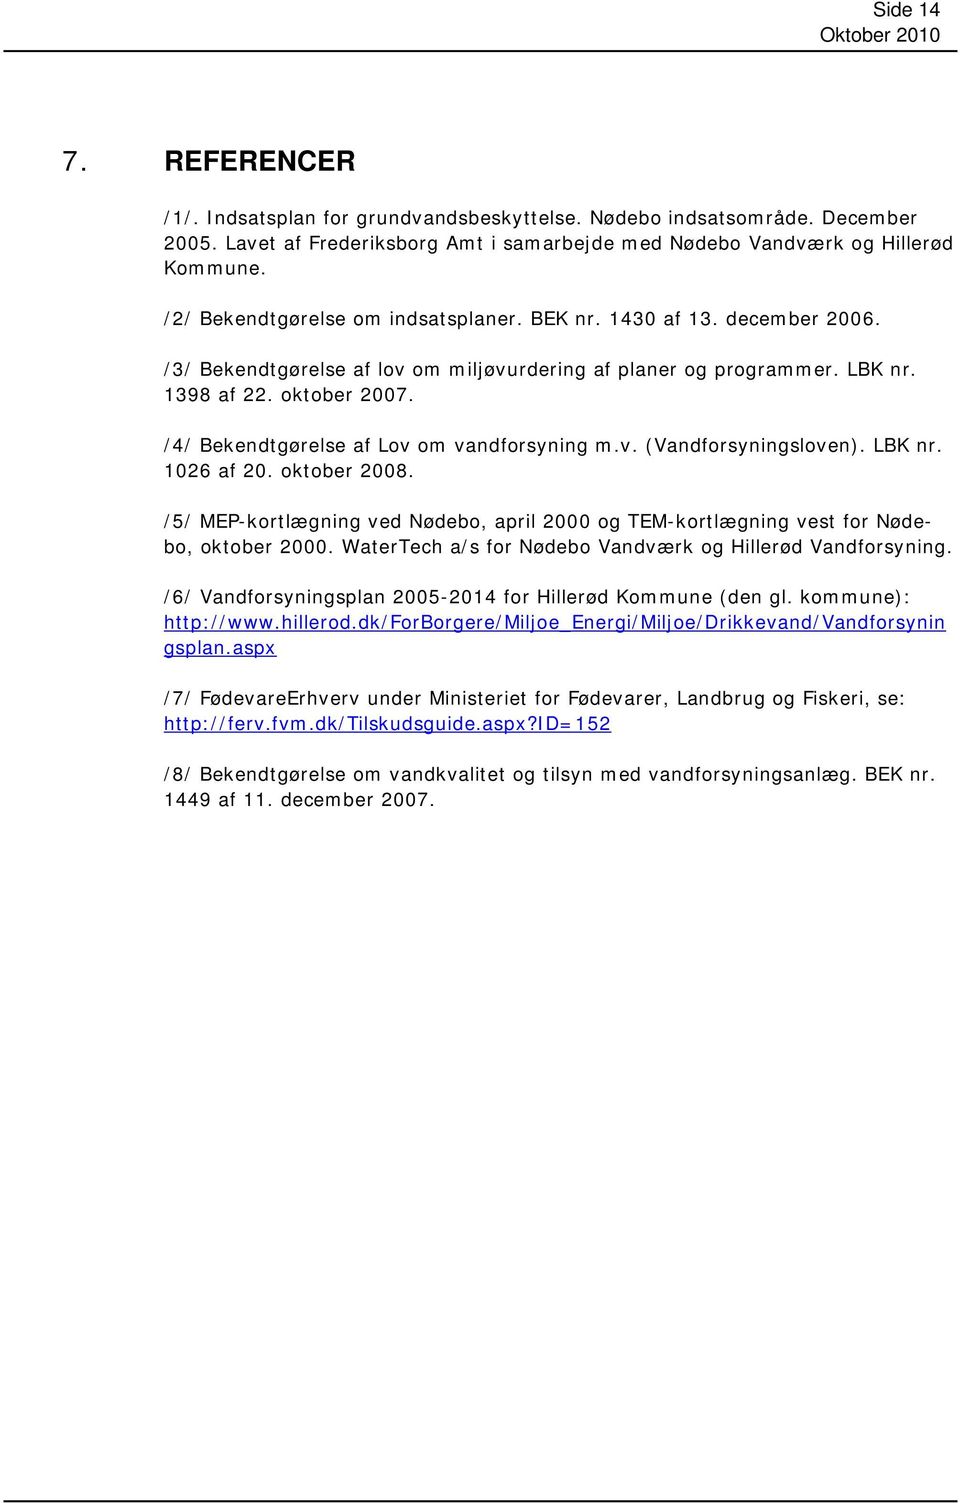 /4/ Bekendtgørelse af Lov om vandforsyning m.v. (Vandforsyningsloven). LBK nr. 1026 af 20. oktober 2008. /5/ MEP-kortlægning ved Nødebo, april 2000 og TEM-kortlægning vest for Nødebo, oktober 2000.